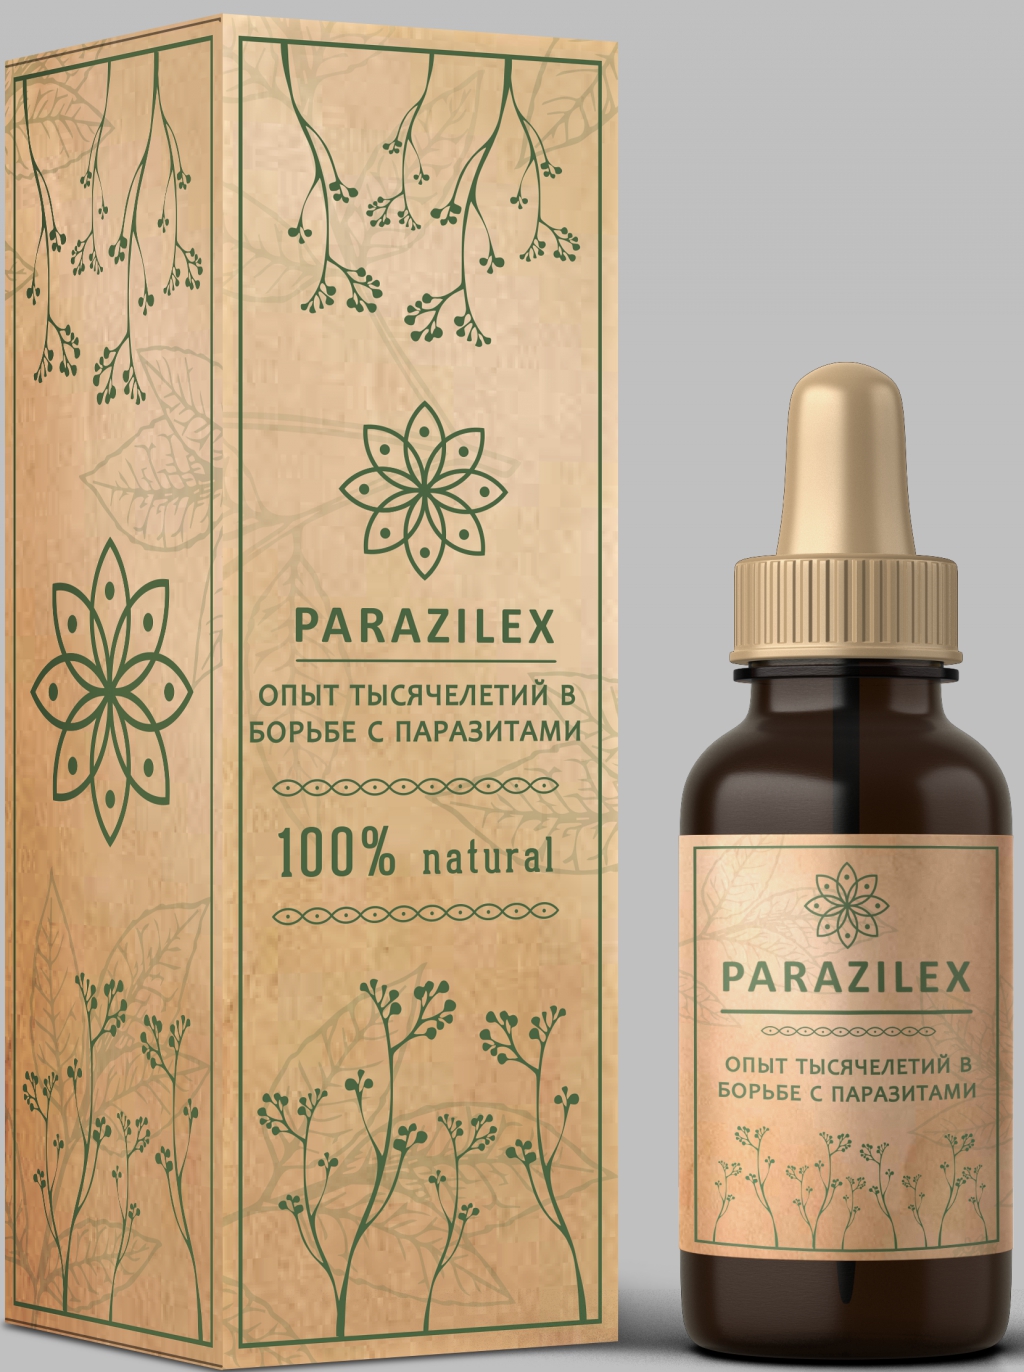 Parazilex средство от 250 видов паразитов отзывы